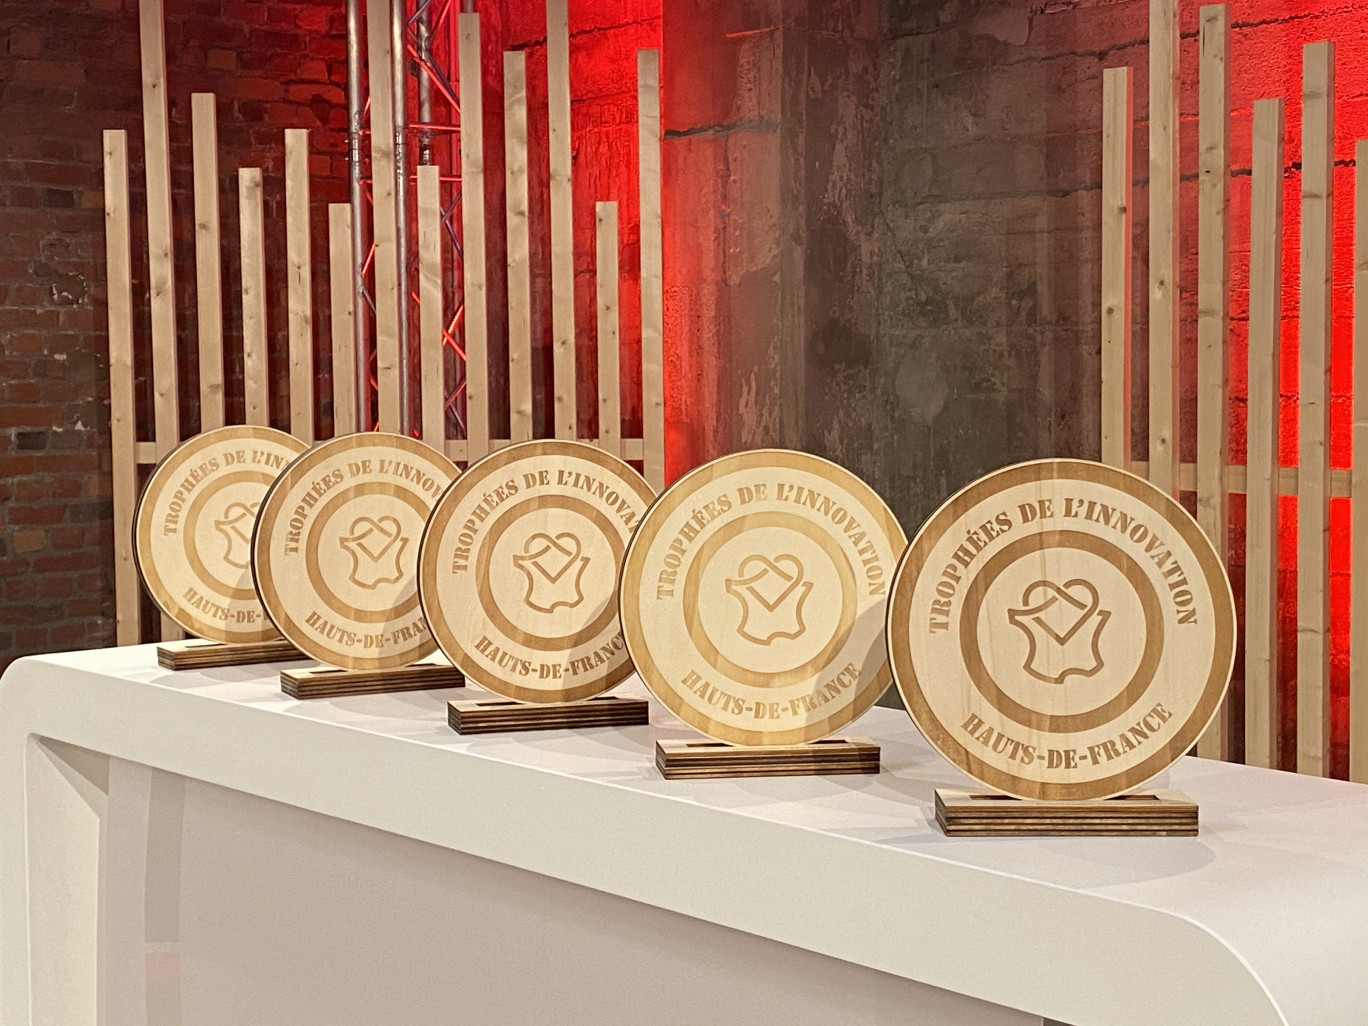 Cinq projets récompensés par les Trophées de l'Innovation